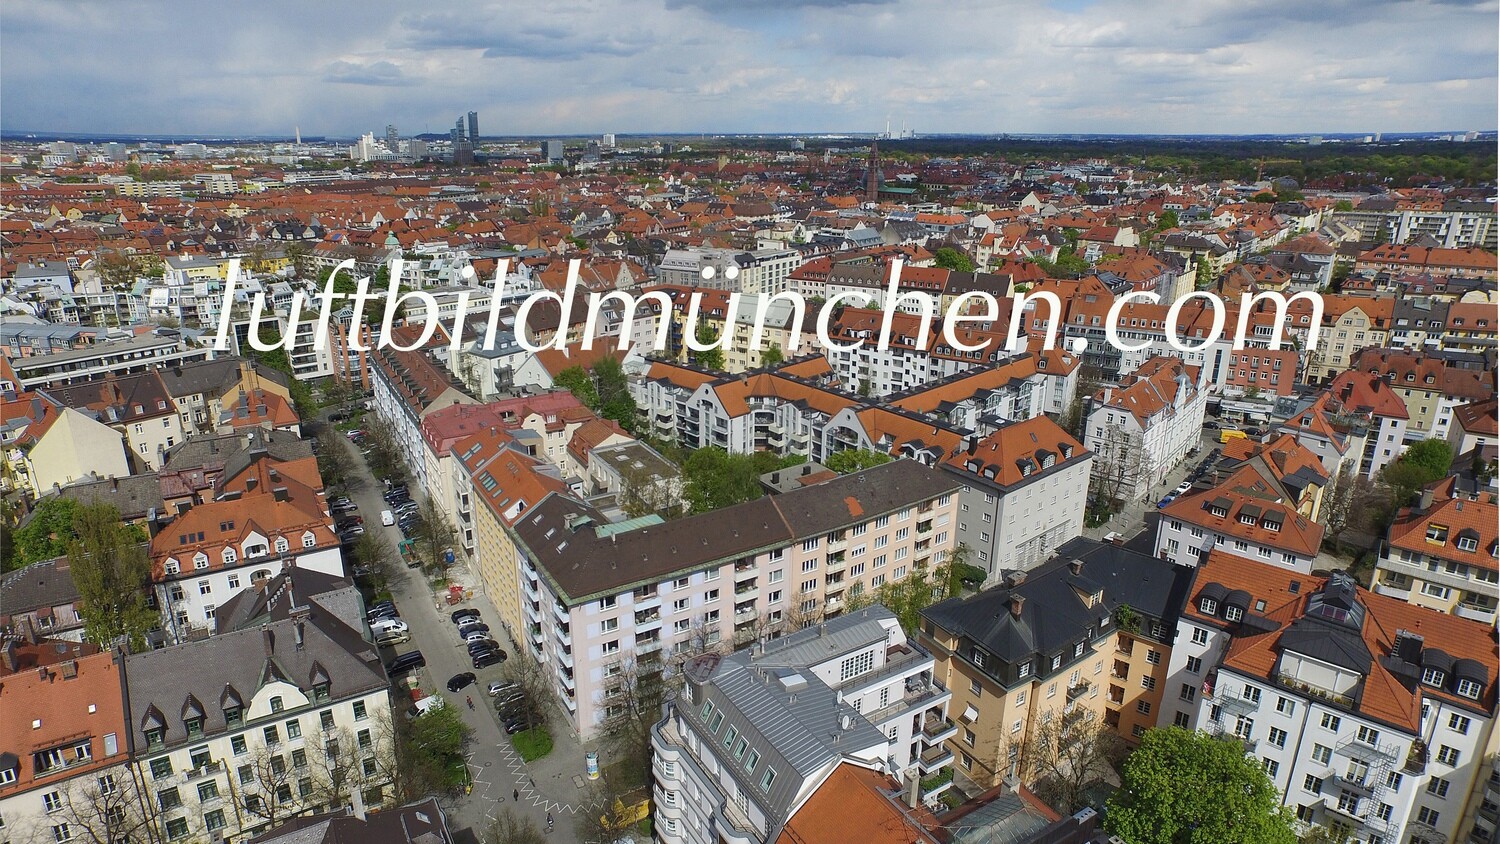 Luftbildfoto, Luftaufnahme, Luftbild, Foto mit Drohne, München, Foto von oben, Schwabing, Bauerstrasse, Kurfürstenplatz, Wohngebiet,